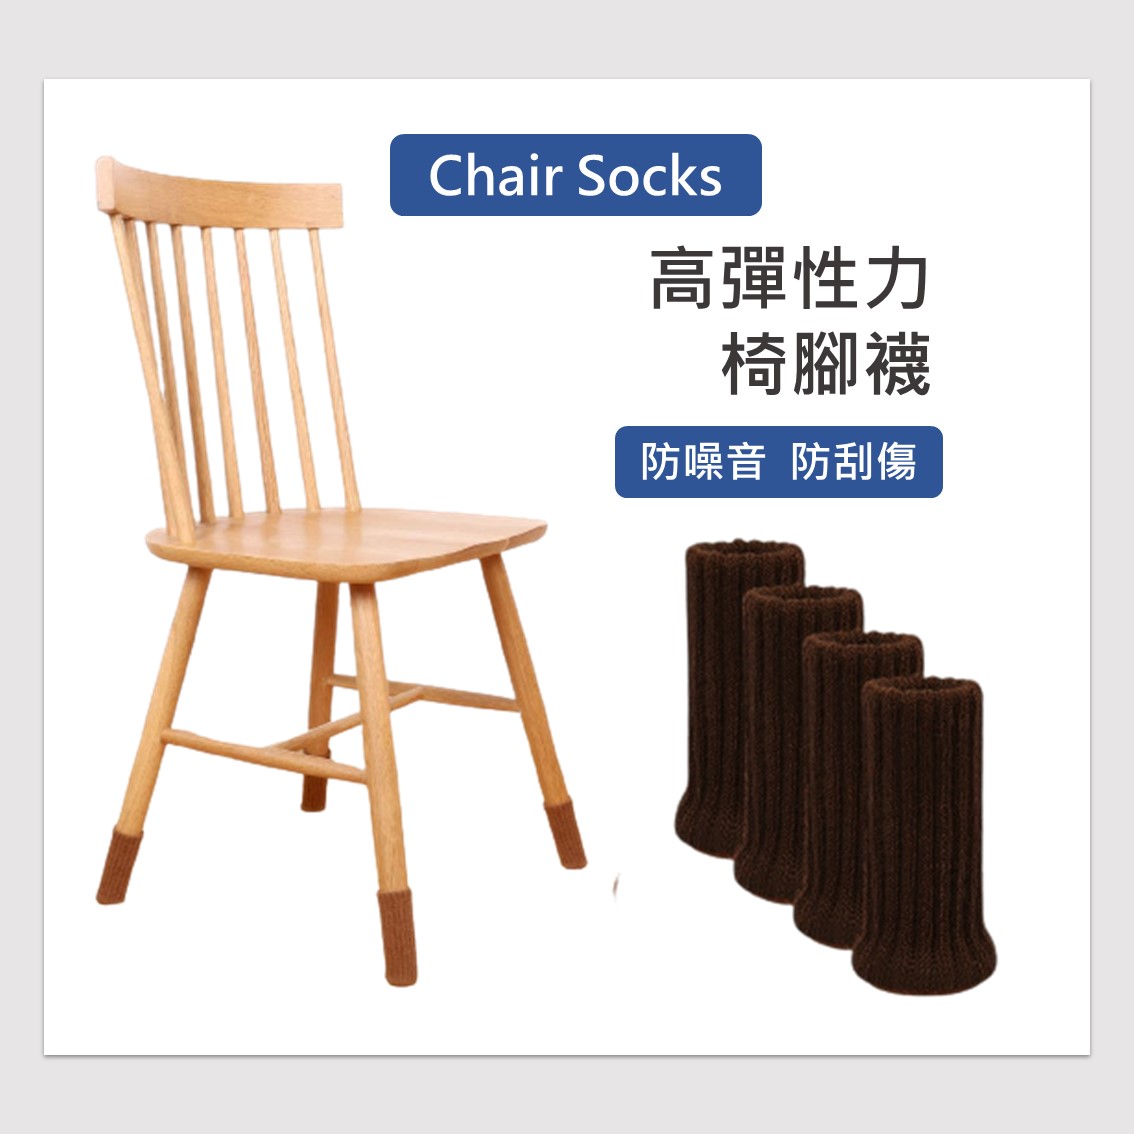 雙層針織套 加厚款椅腳套 防刮地板 靜音耐磨防滑 沙發套/板凳套/椅凳防磨套 椅套 腳套 居家裝飾套件